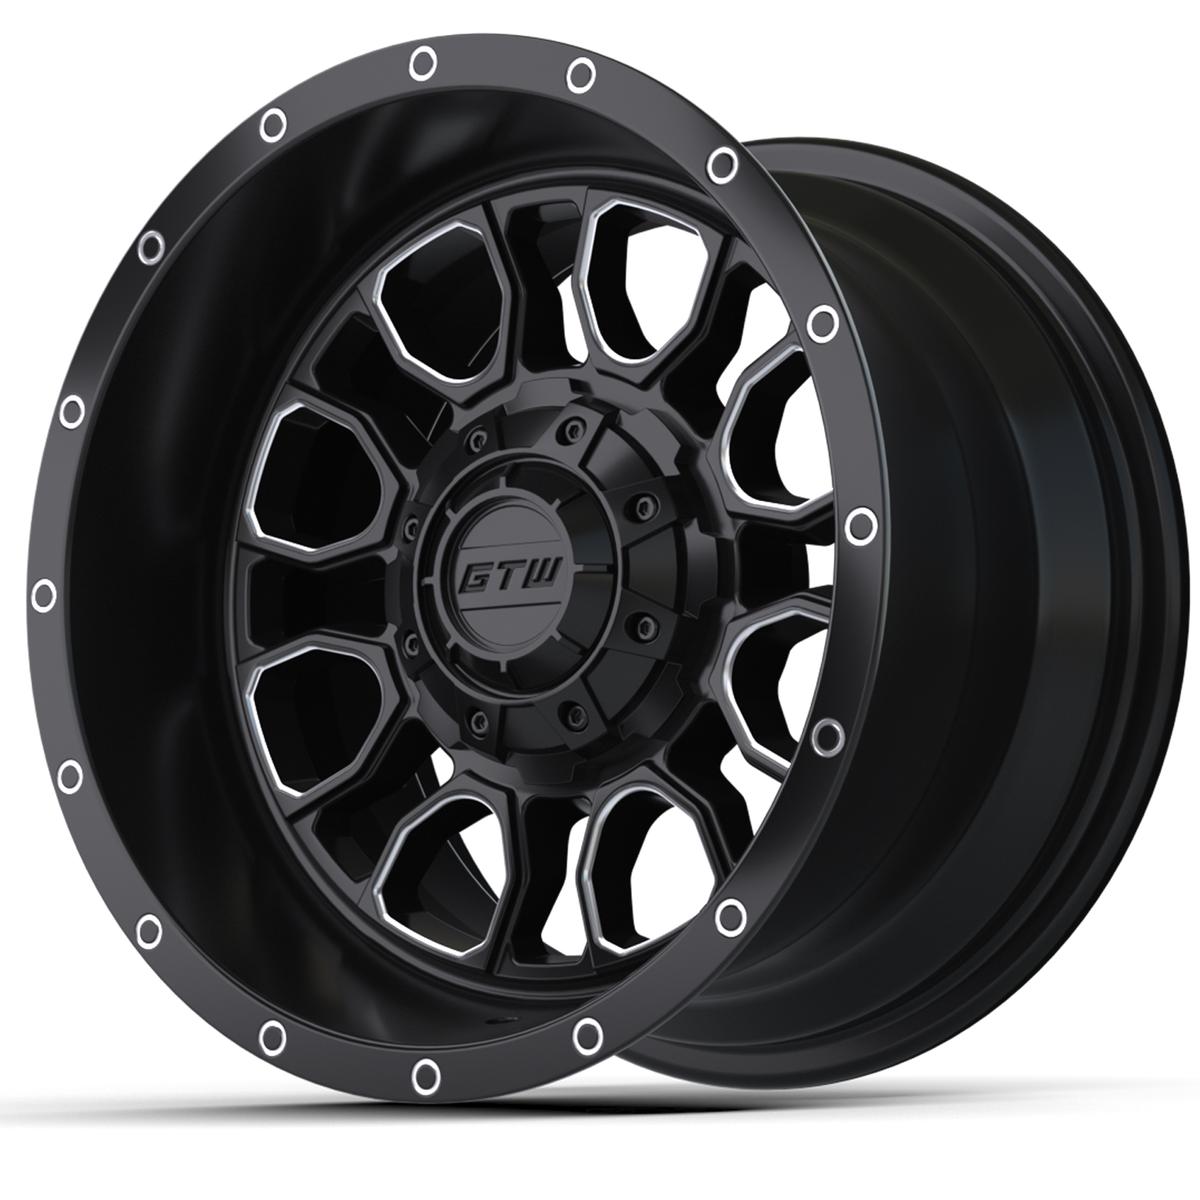 12” GTW Volt Black & Machined Wheel